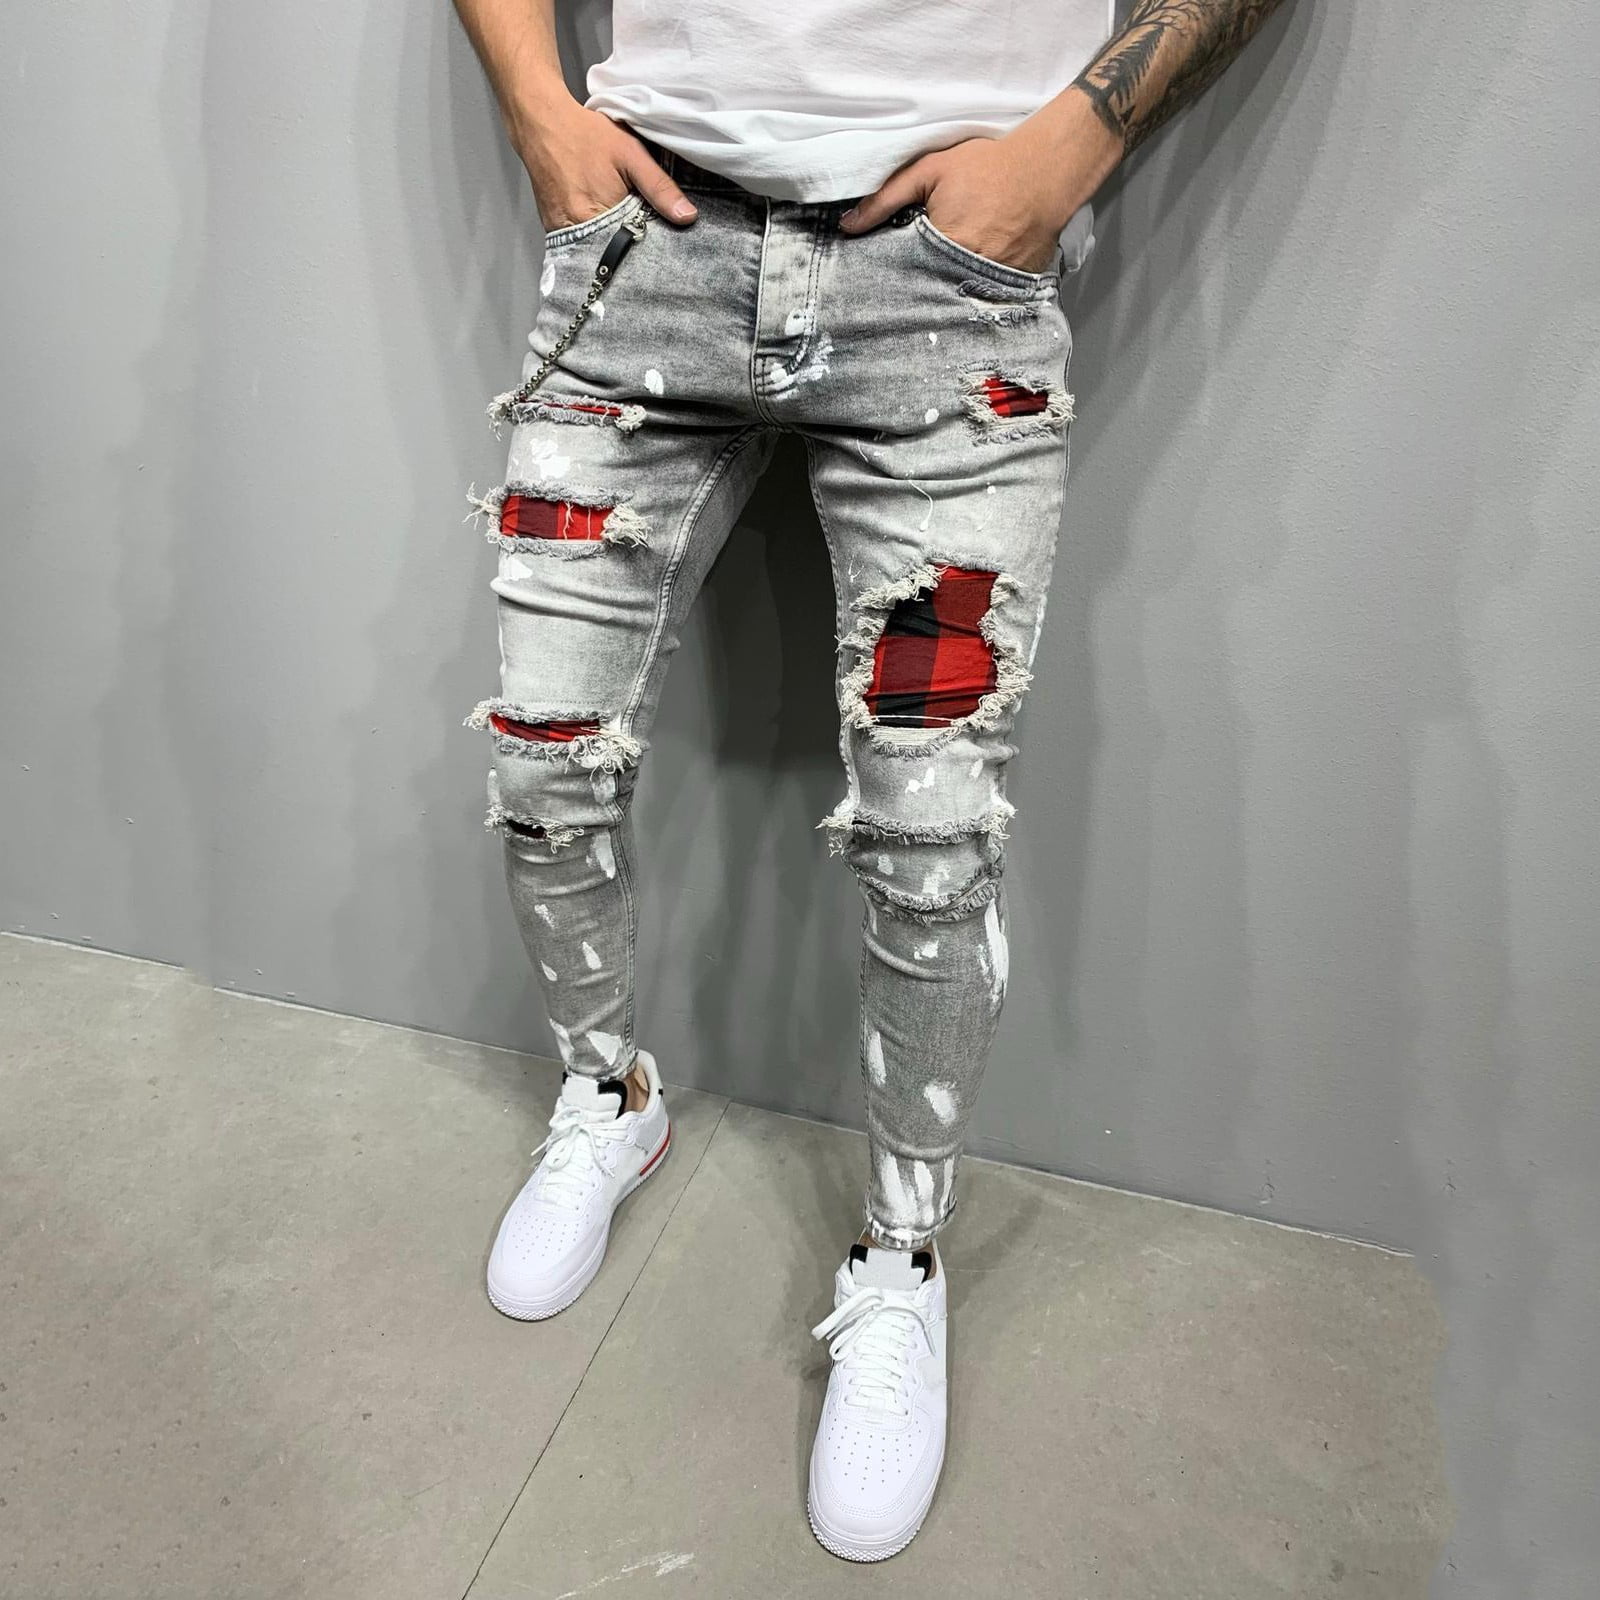 Four Seasons Men Jeans Street Retro Hip Hop Denim Trousers Straight Wide  Leg Pants Stitching Hole Design Ins Hot Sale pants men